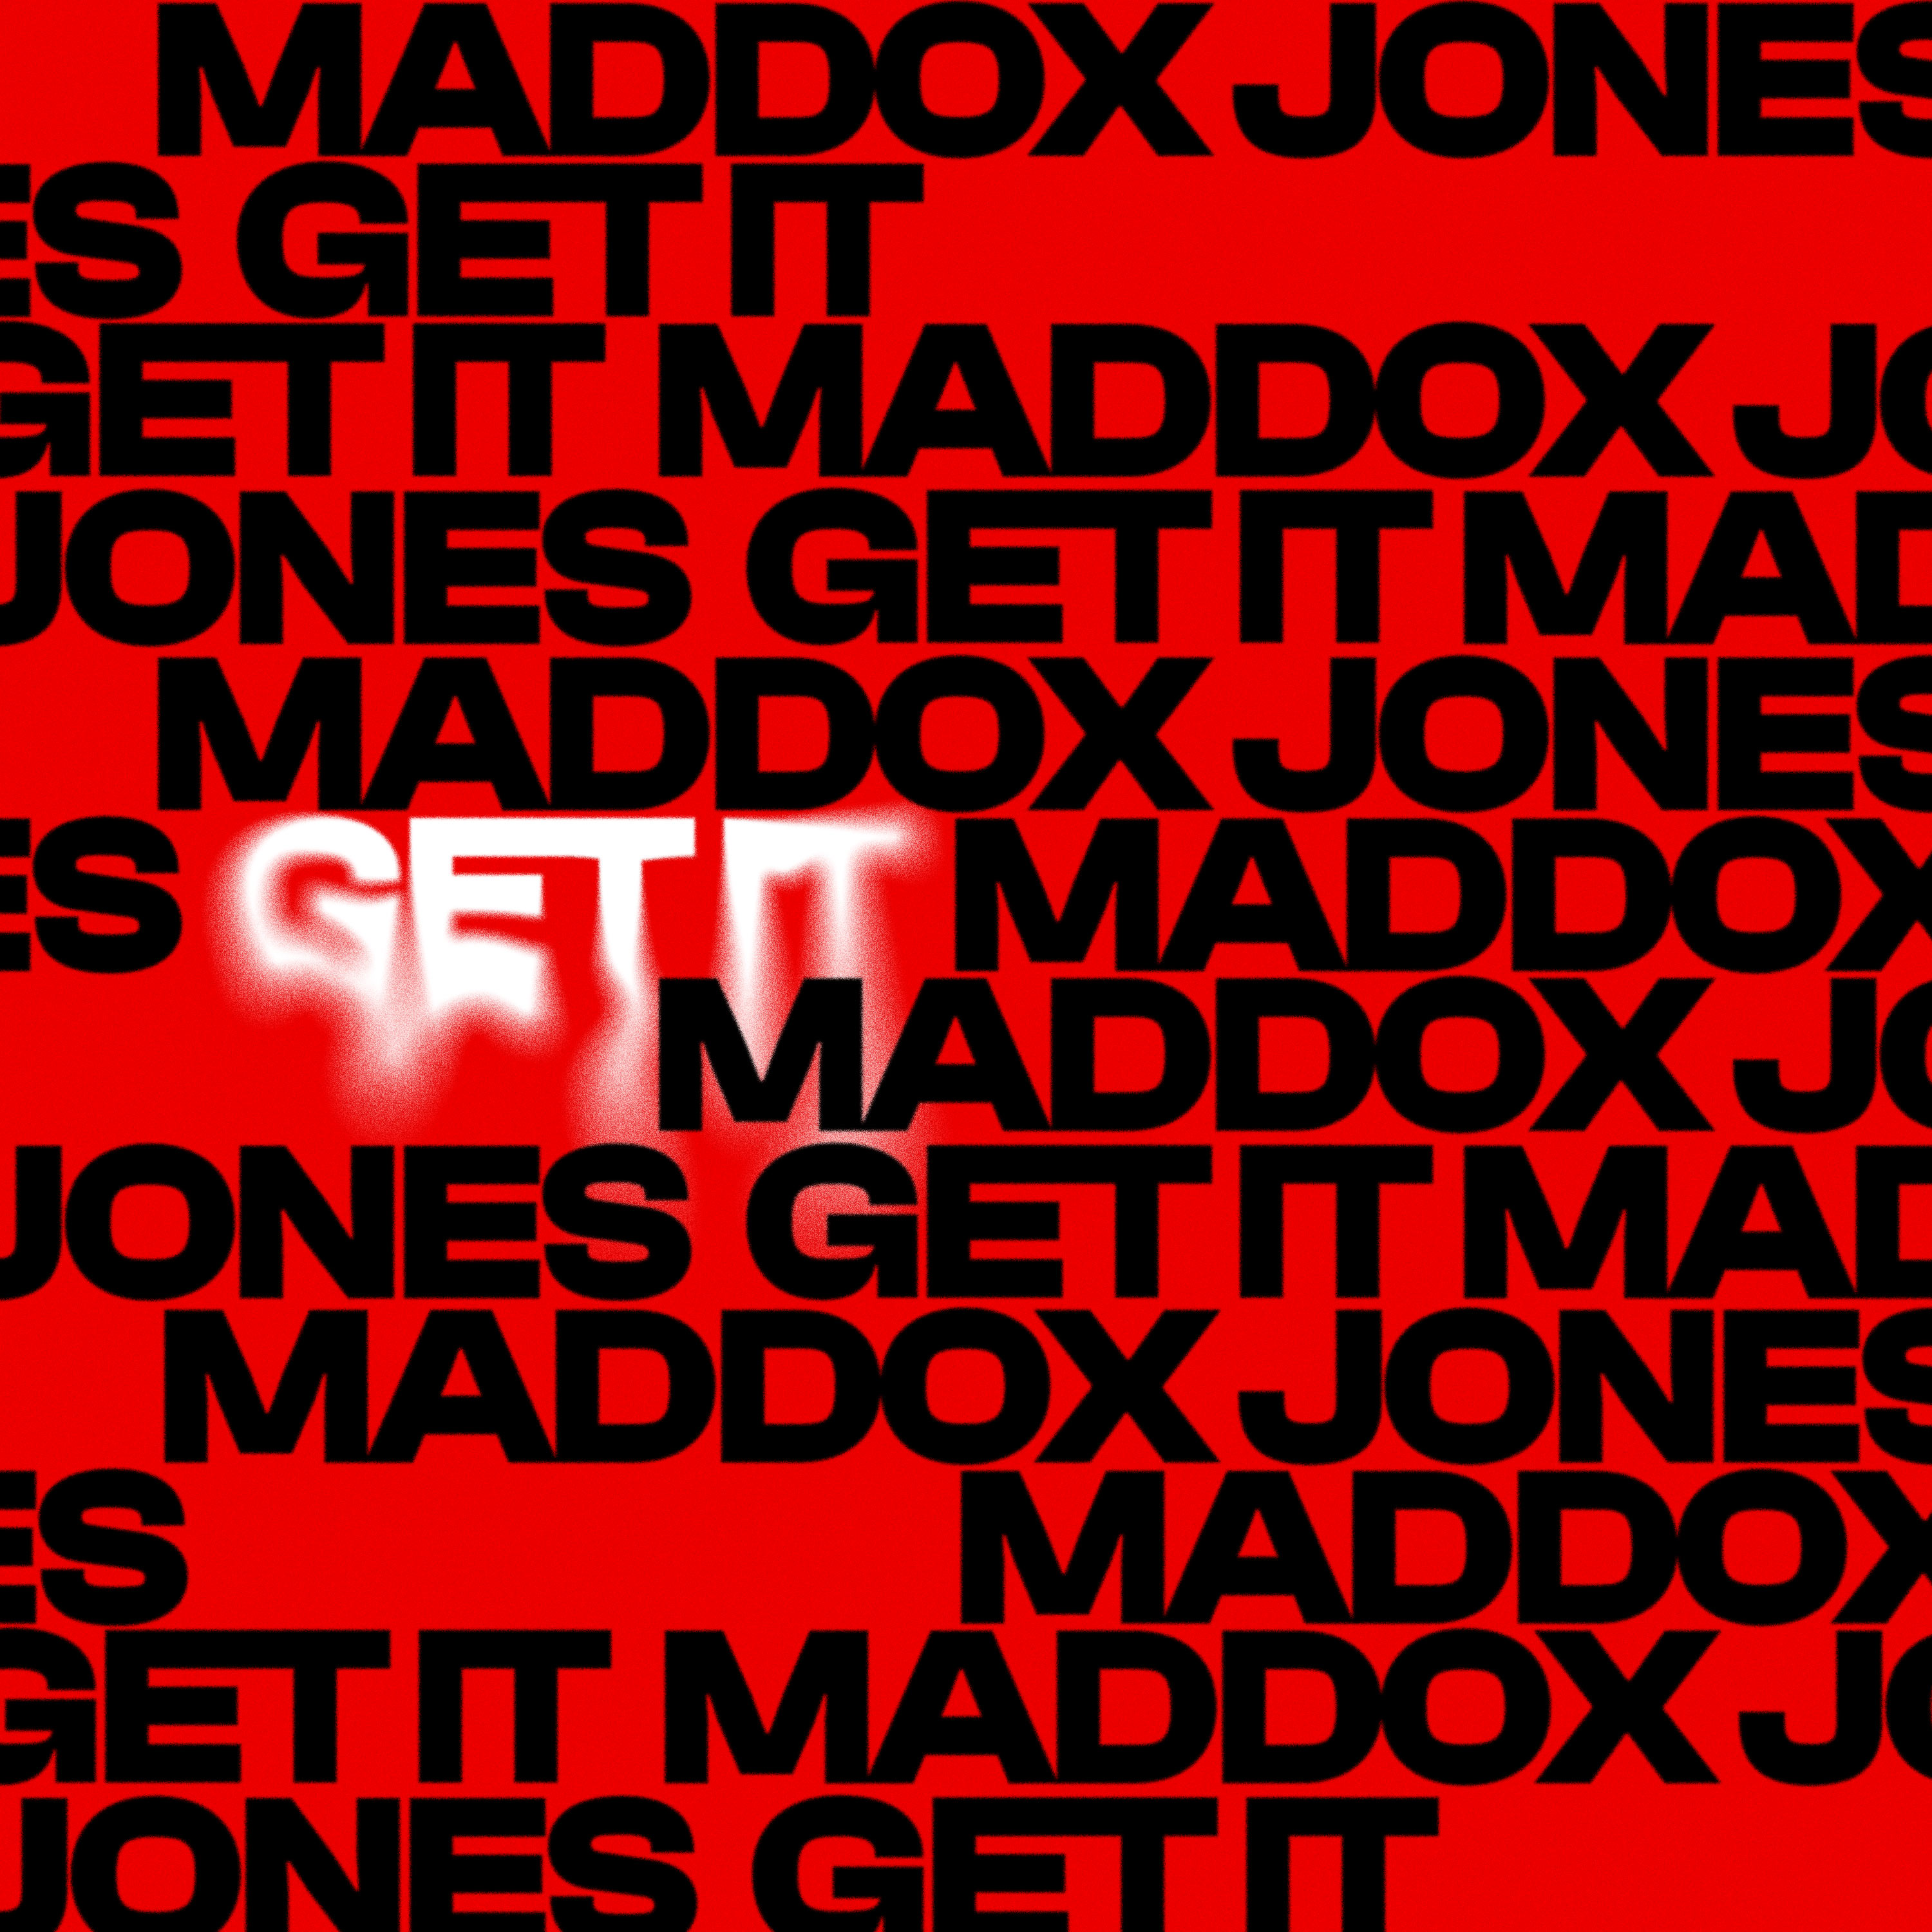 Maddox Jones - Get It - Cover Art